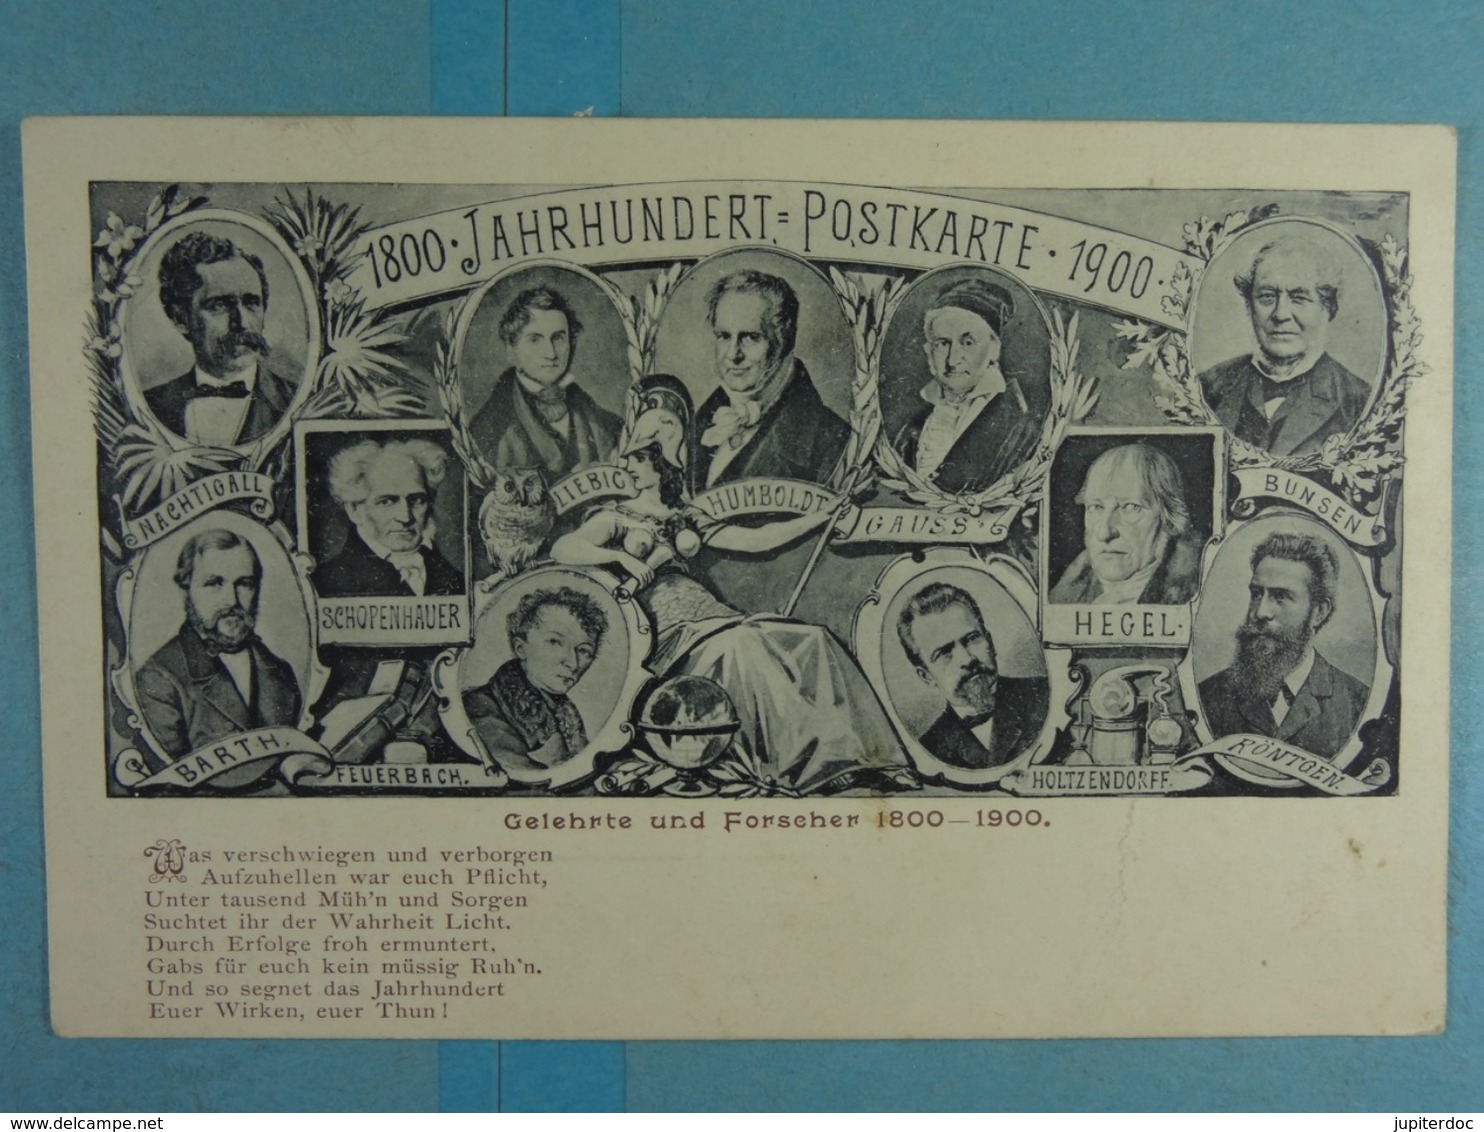 1800 Jahrhundert Postkarte 1900 Gelehrte Und Forscher 1800-1900 - Familles Royales